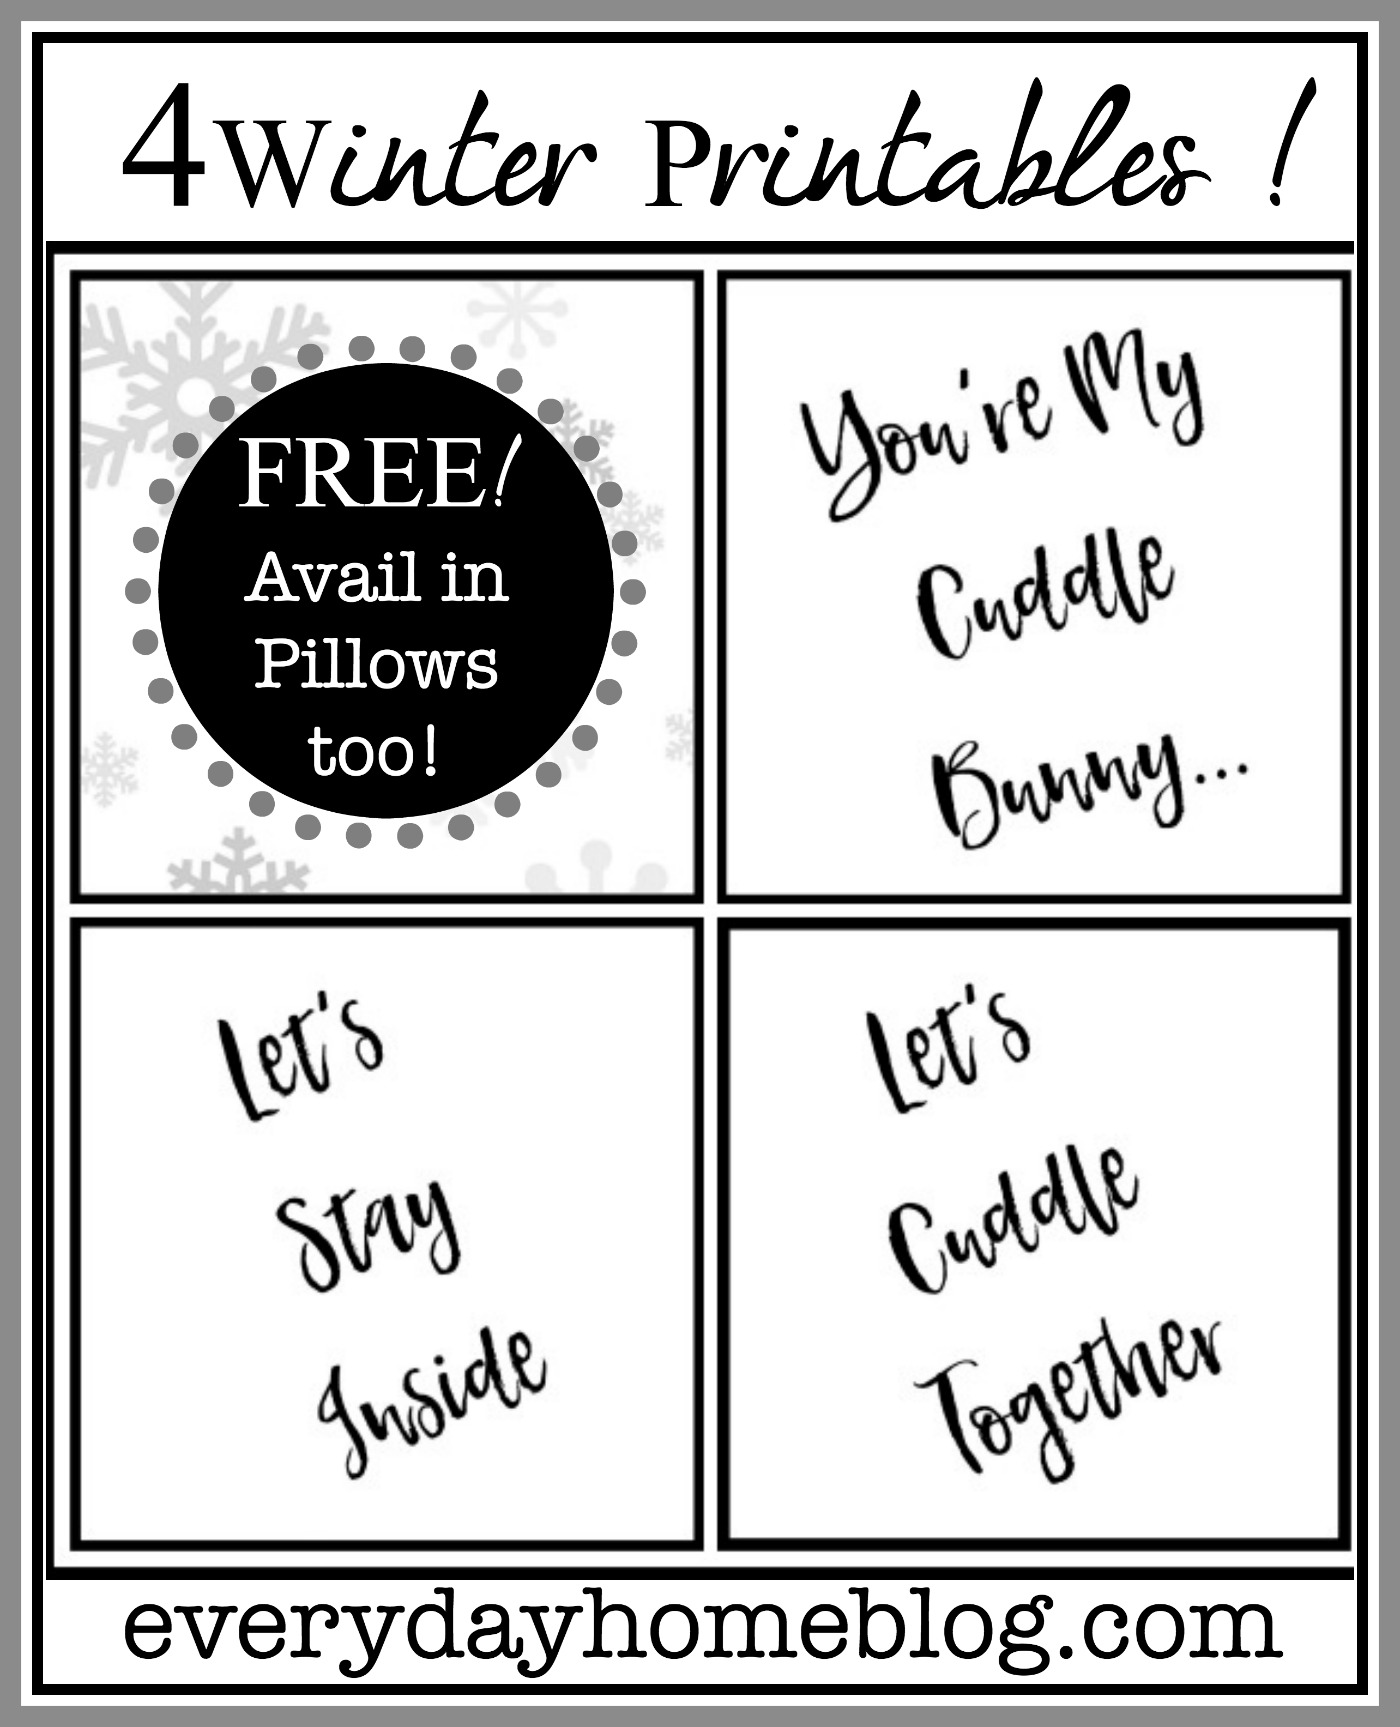 Four Free Winter Printables and Pillows | The Everyday Home | www.everydayhomeblog.com